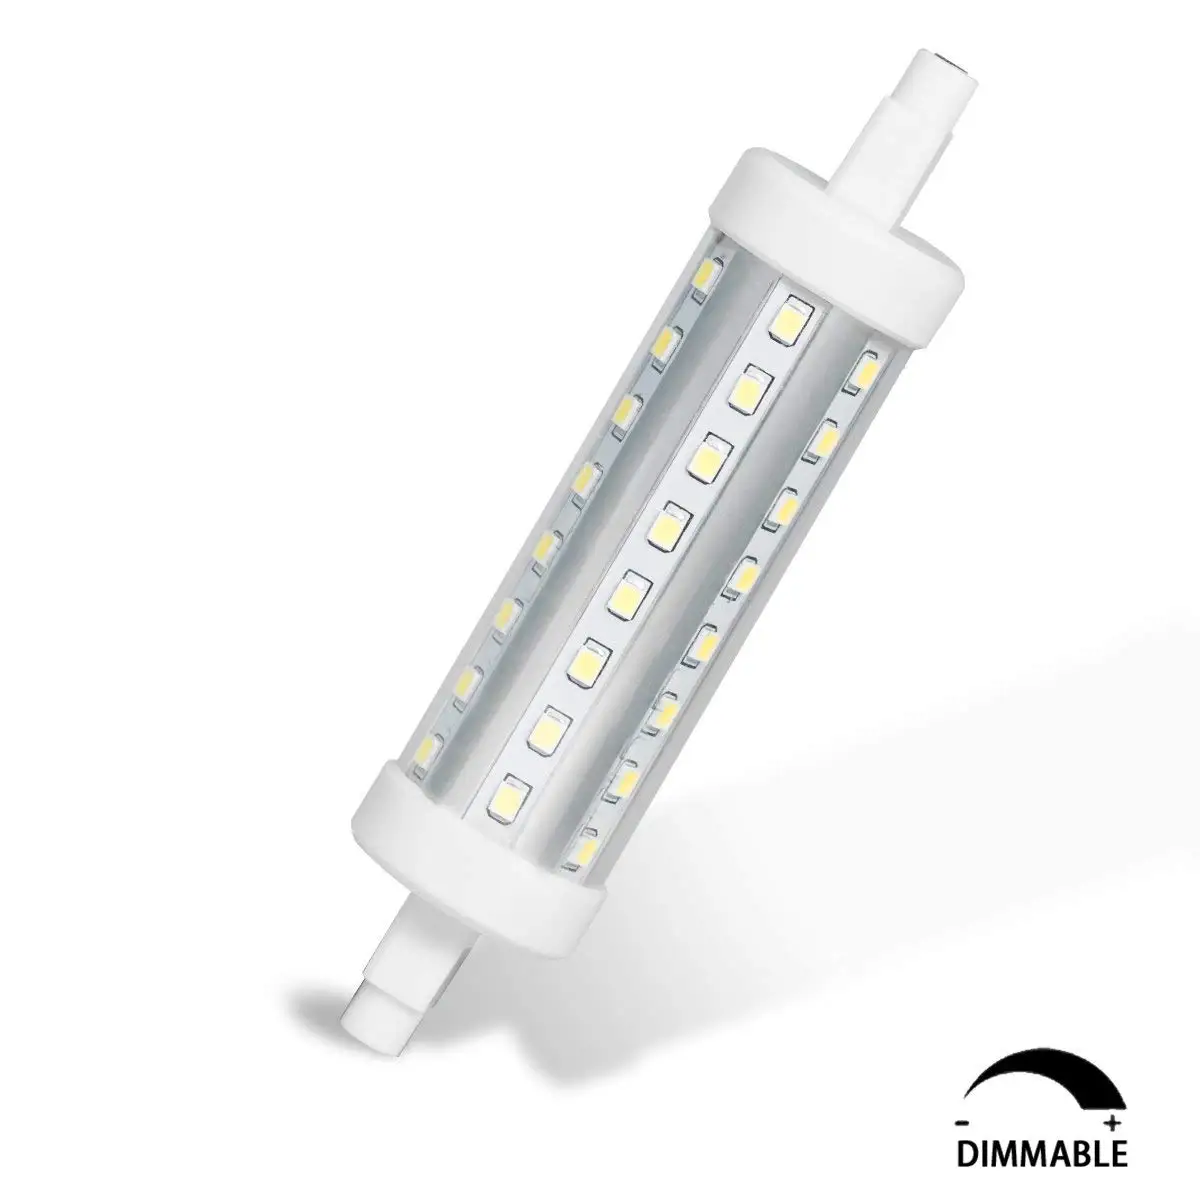 R7S светодиодный лампочка Dimmable10W лампа 3000 K/6000 K 900lm 100W эквивалент галогенной лампы переменного тока 90-240V Энергосбережение в офисе